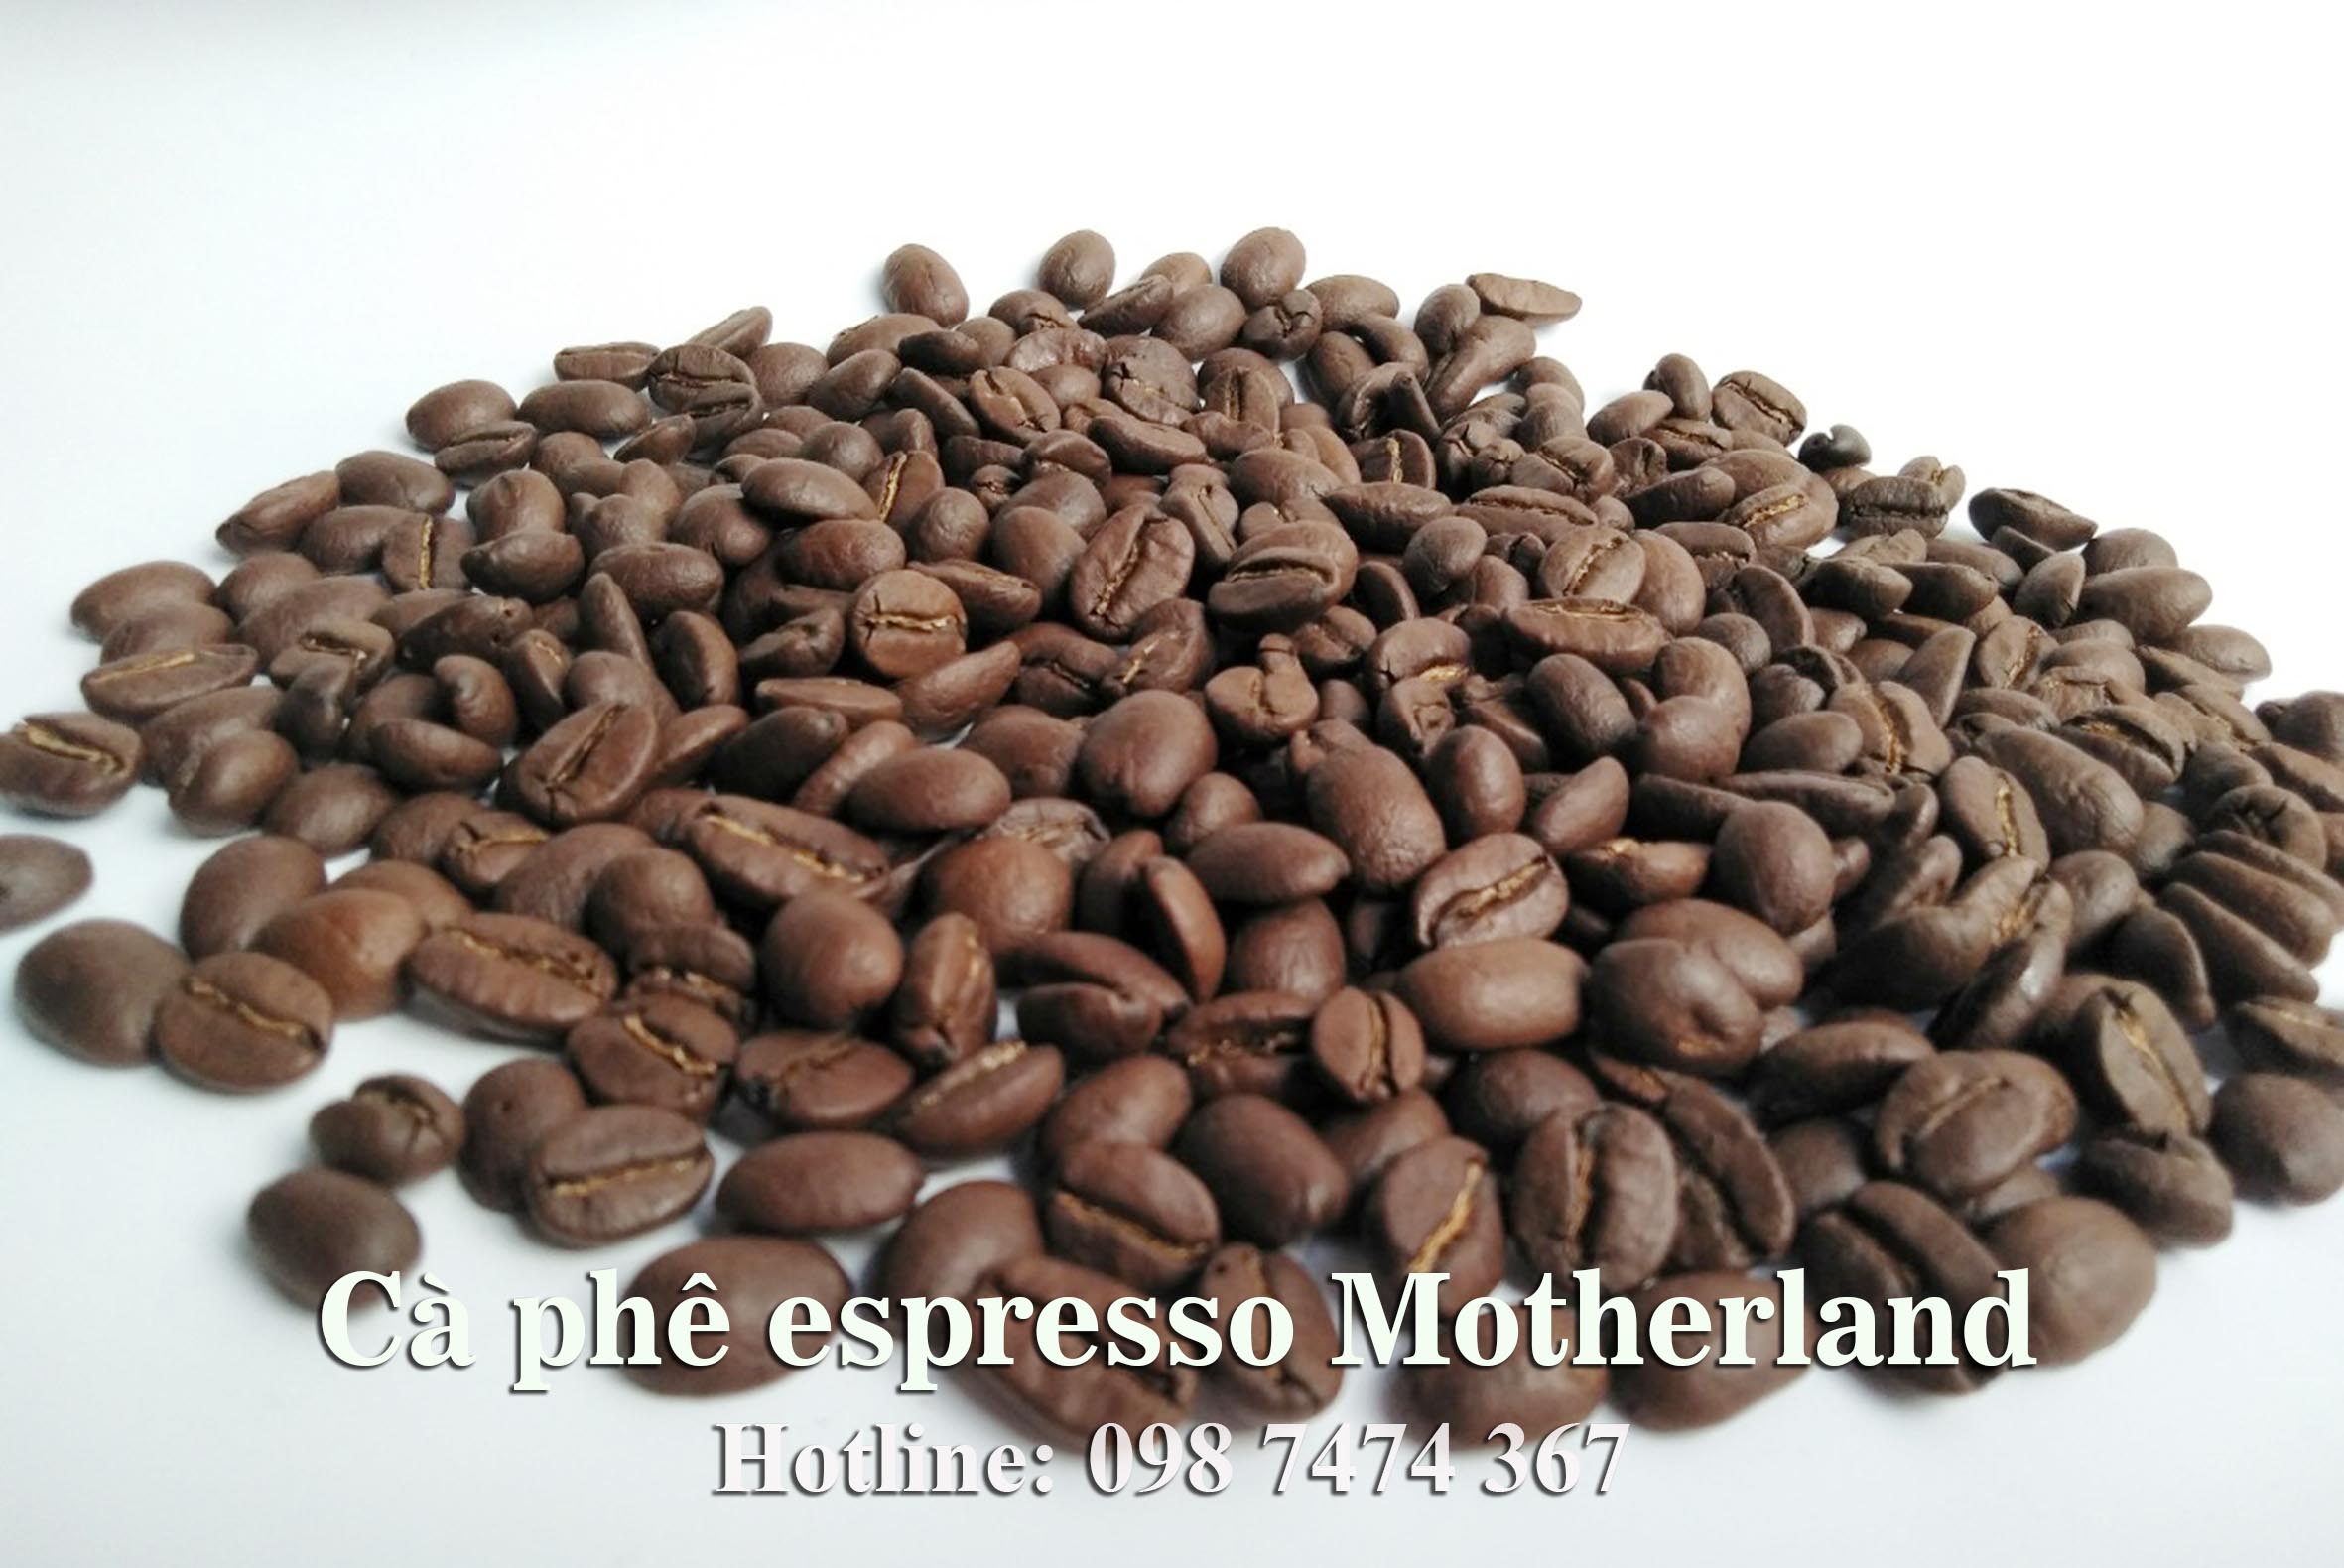 cà phê arabica cầu đất và robusta natural hạt đẹp sàn 16 giá sỉ